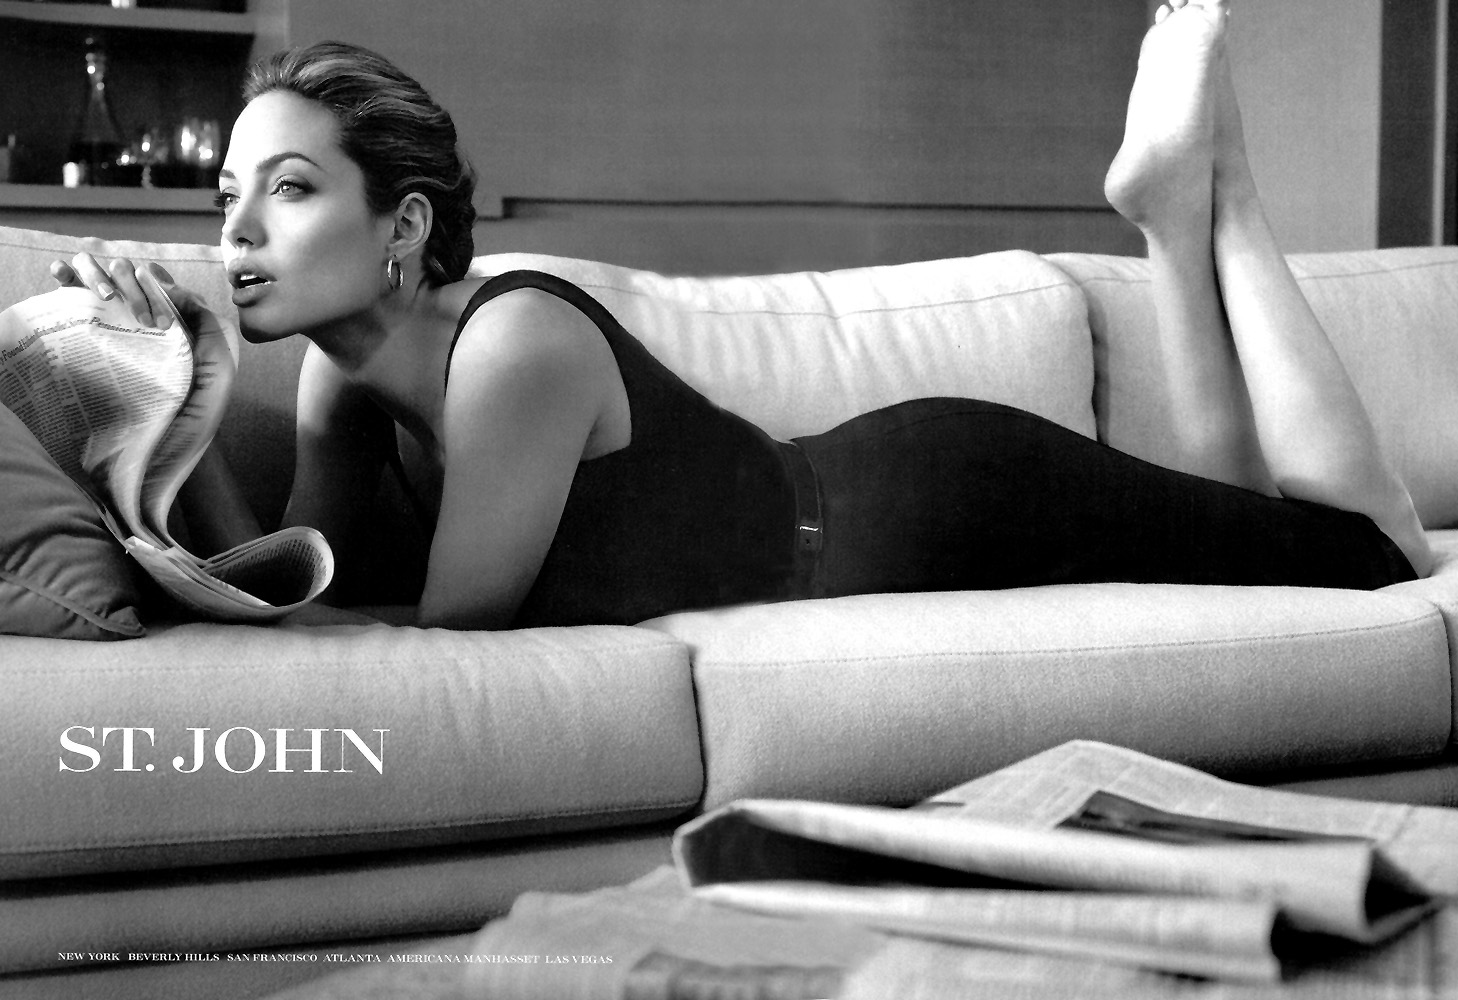 Baixe gratuitamente a imagem Angelina Jolie, Celebridade na área de trabalho do seu PC